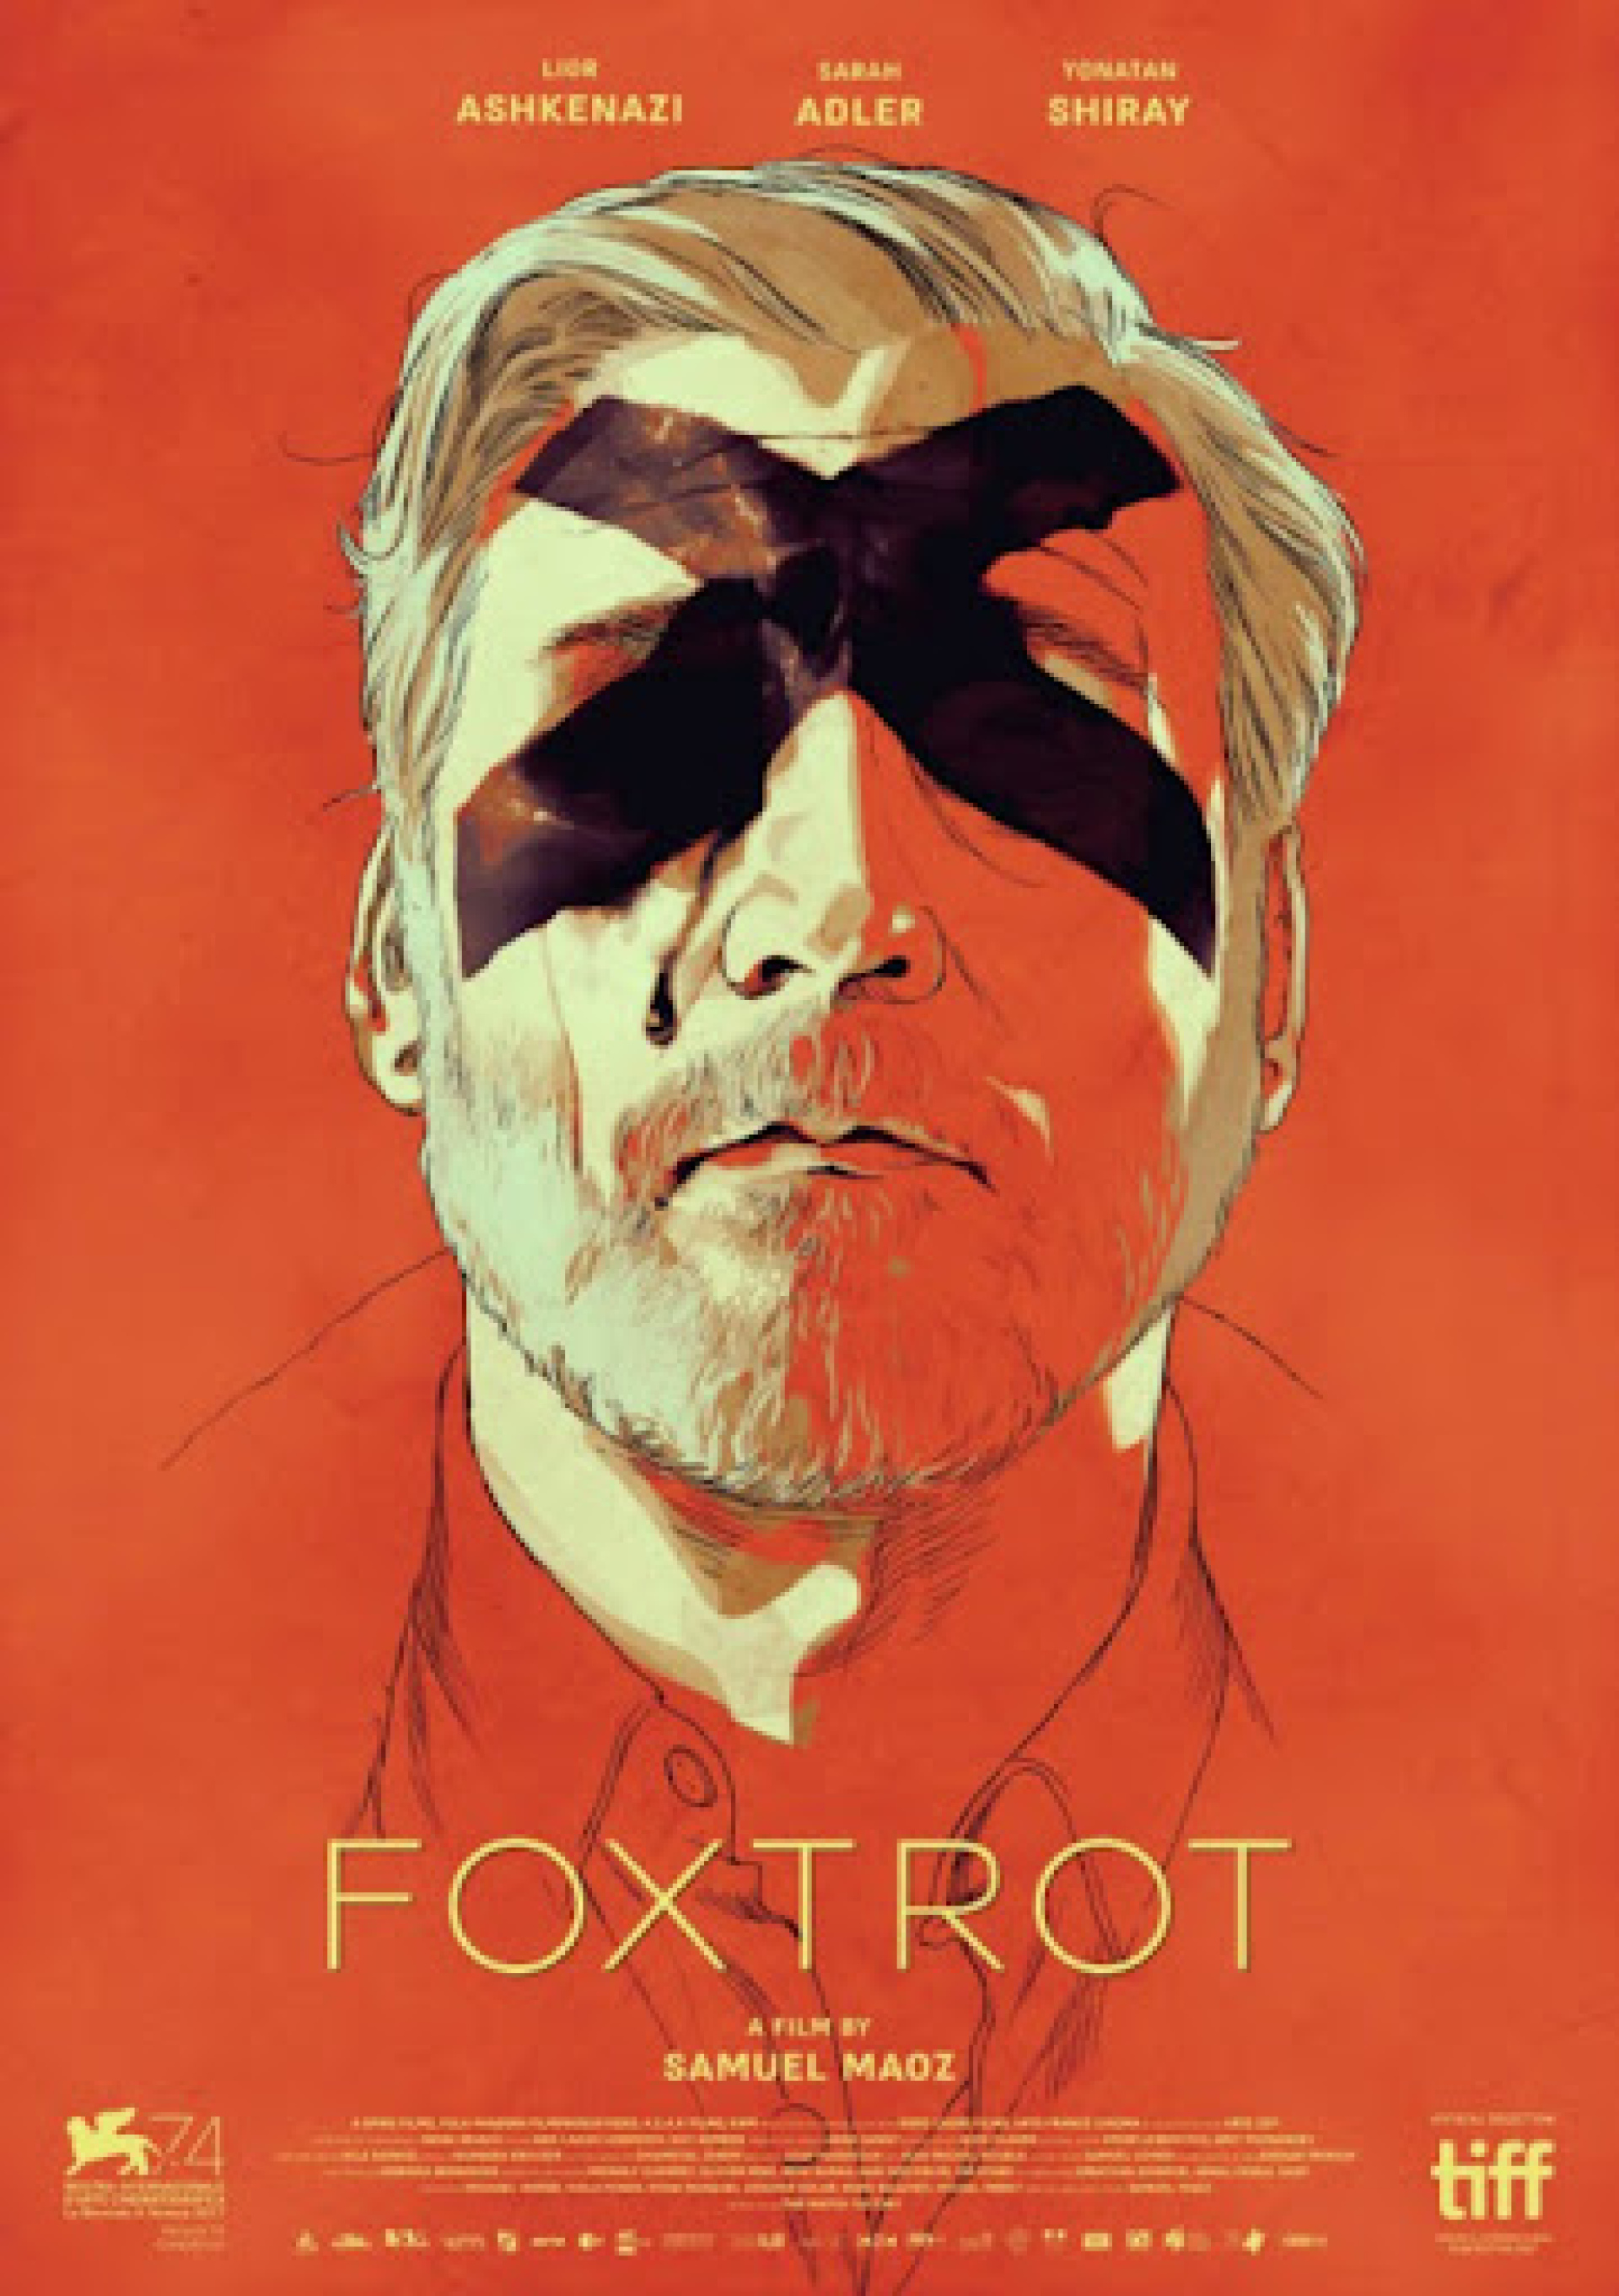 Abbildung von Foxtrot Film Poster